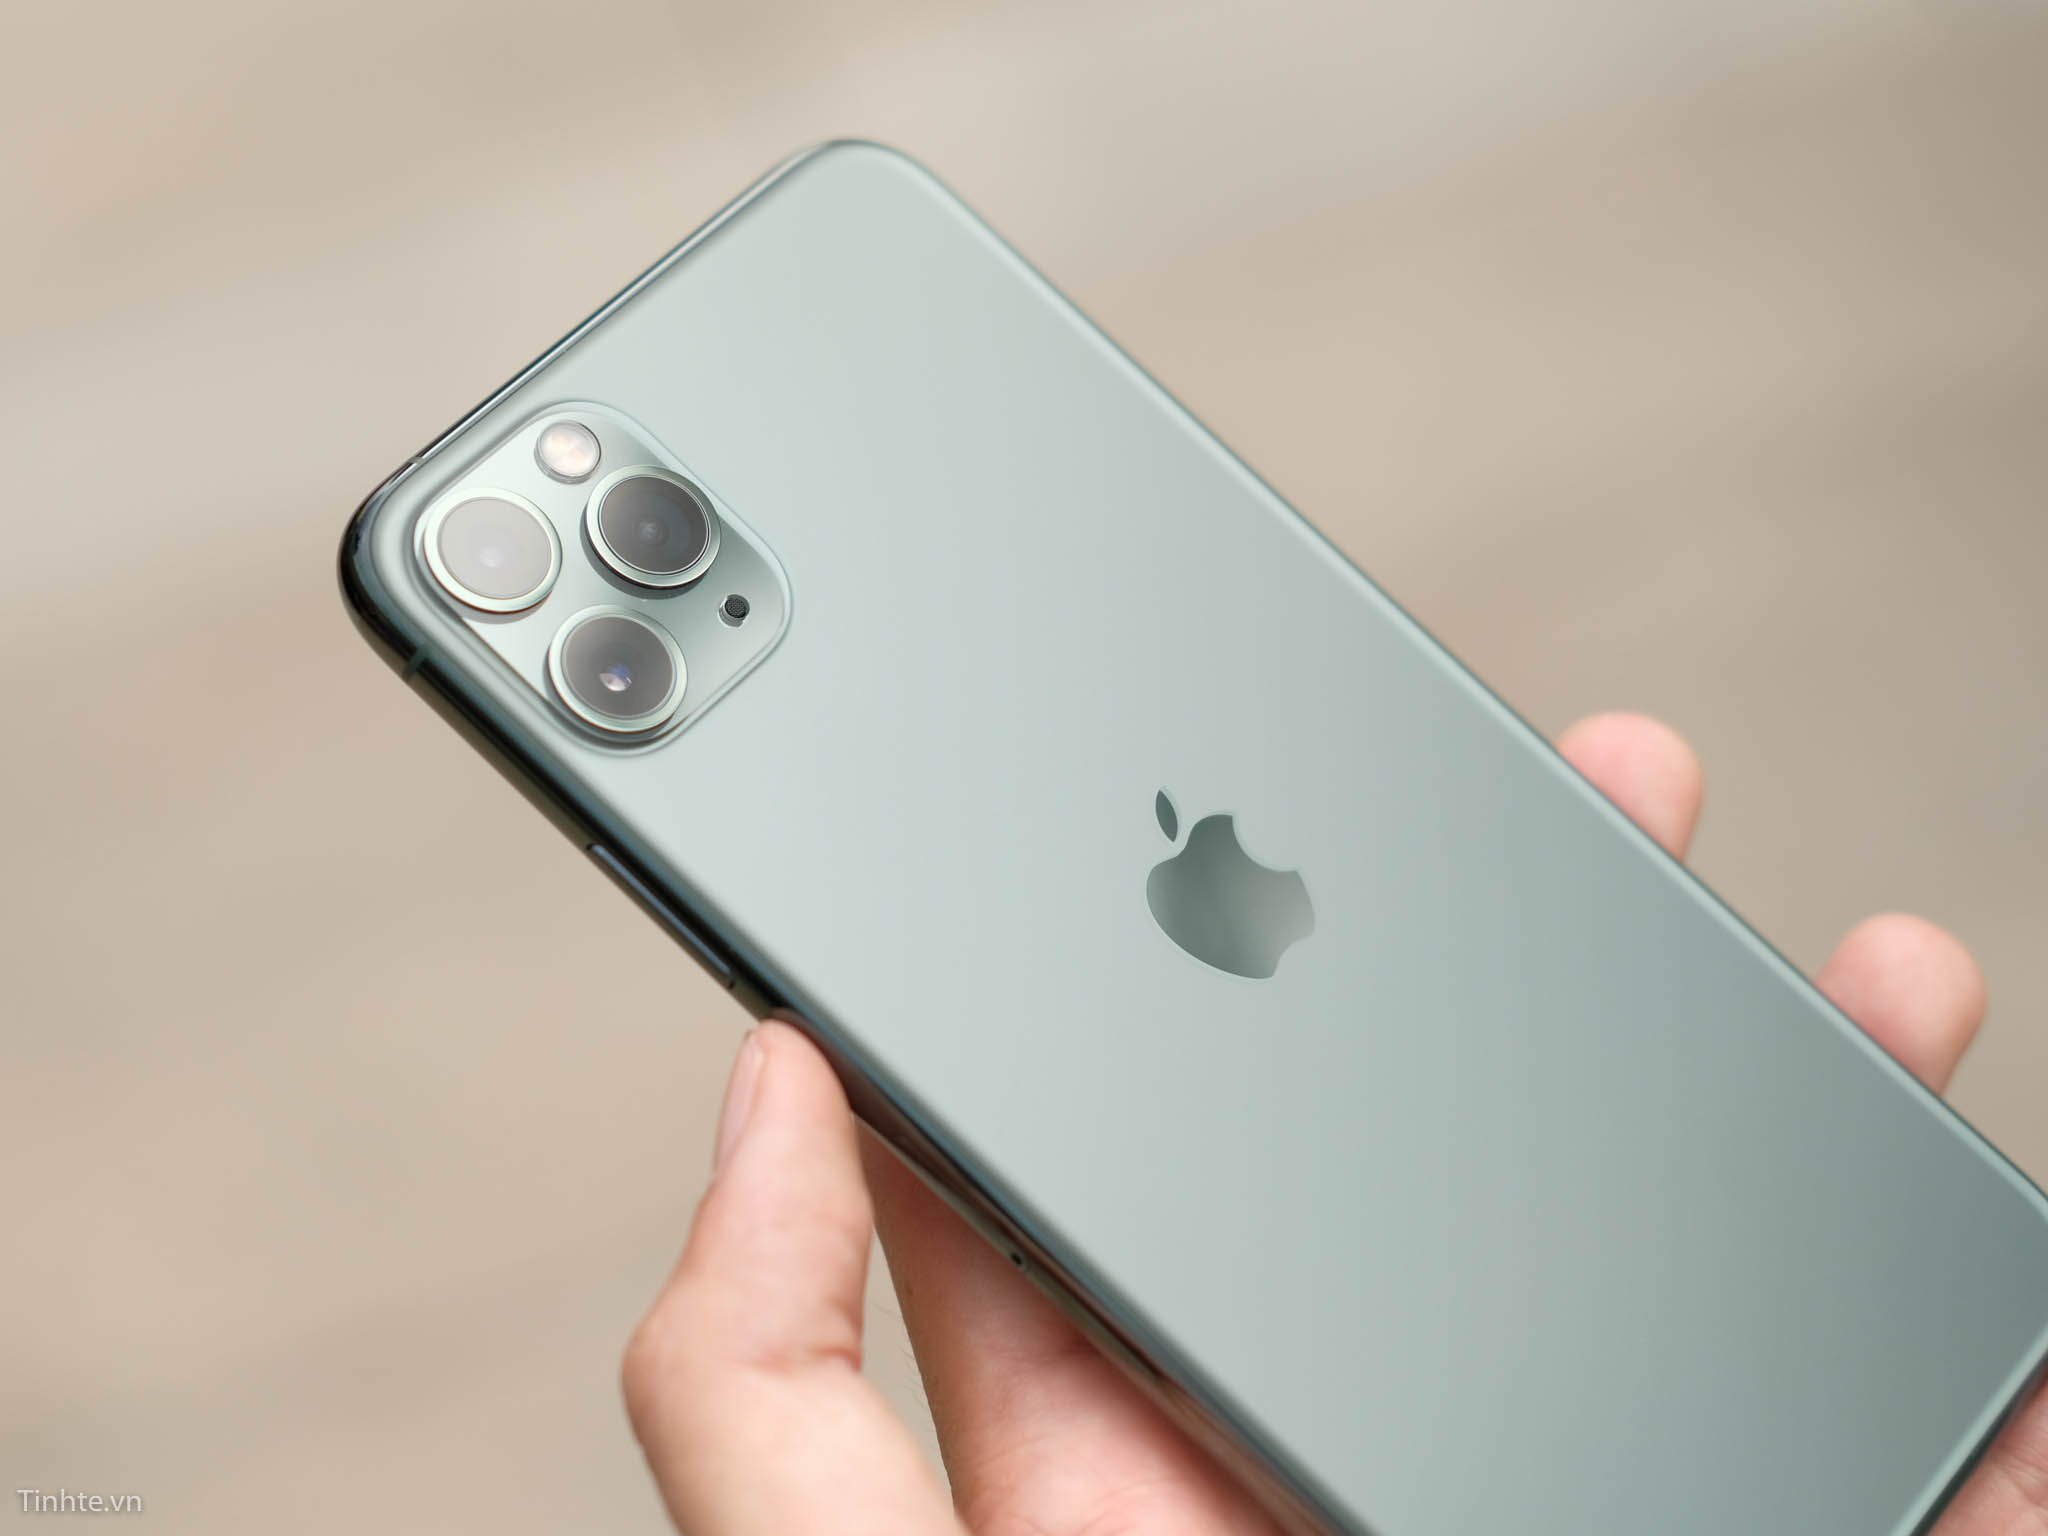 iPhone 11 Pro, 11 Pro Max có mấy màu được bán tại Việt Nam?